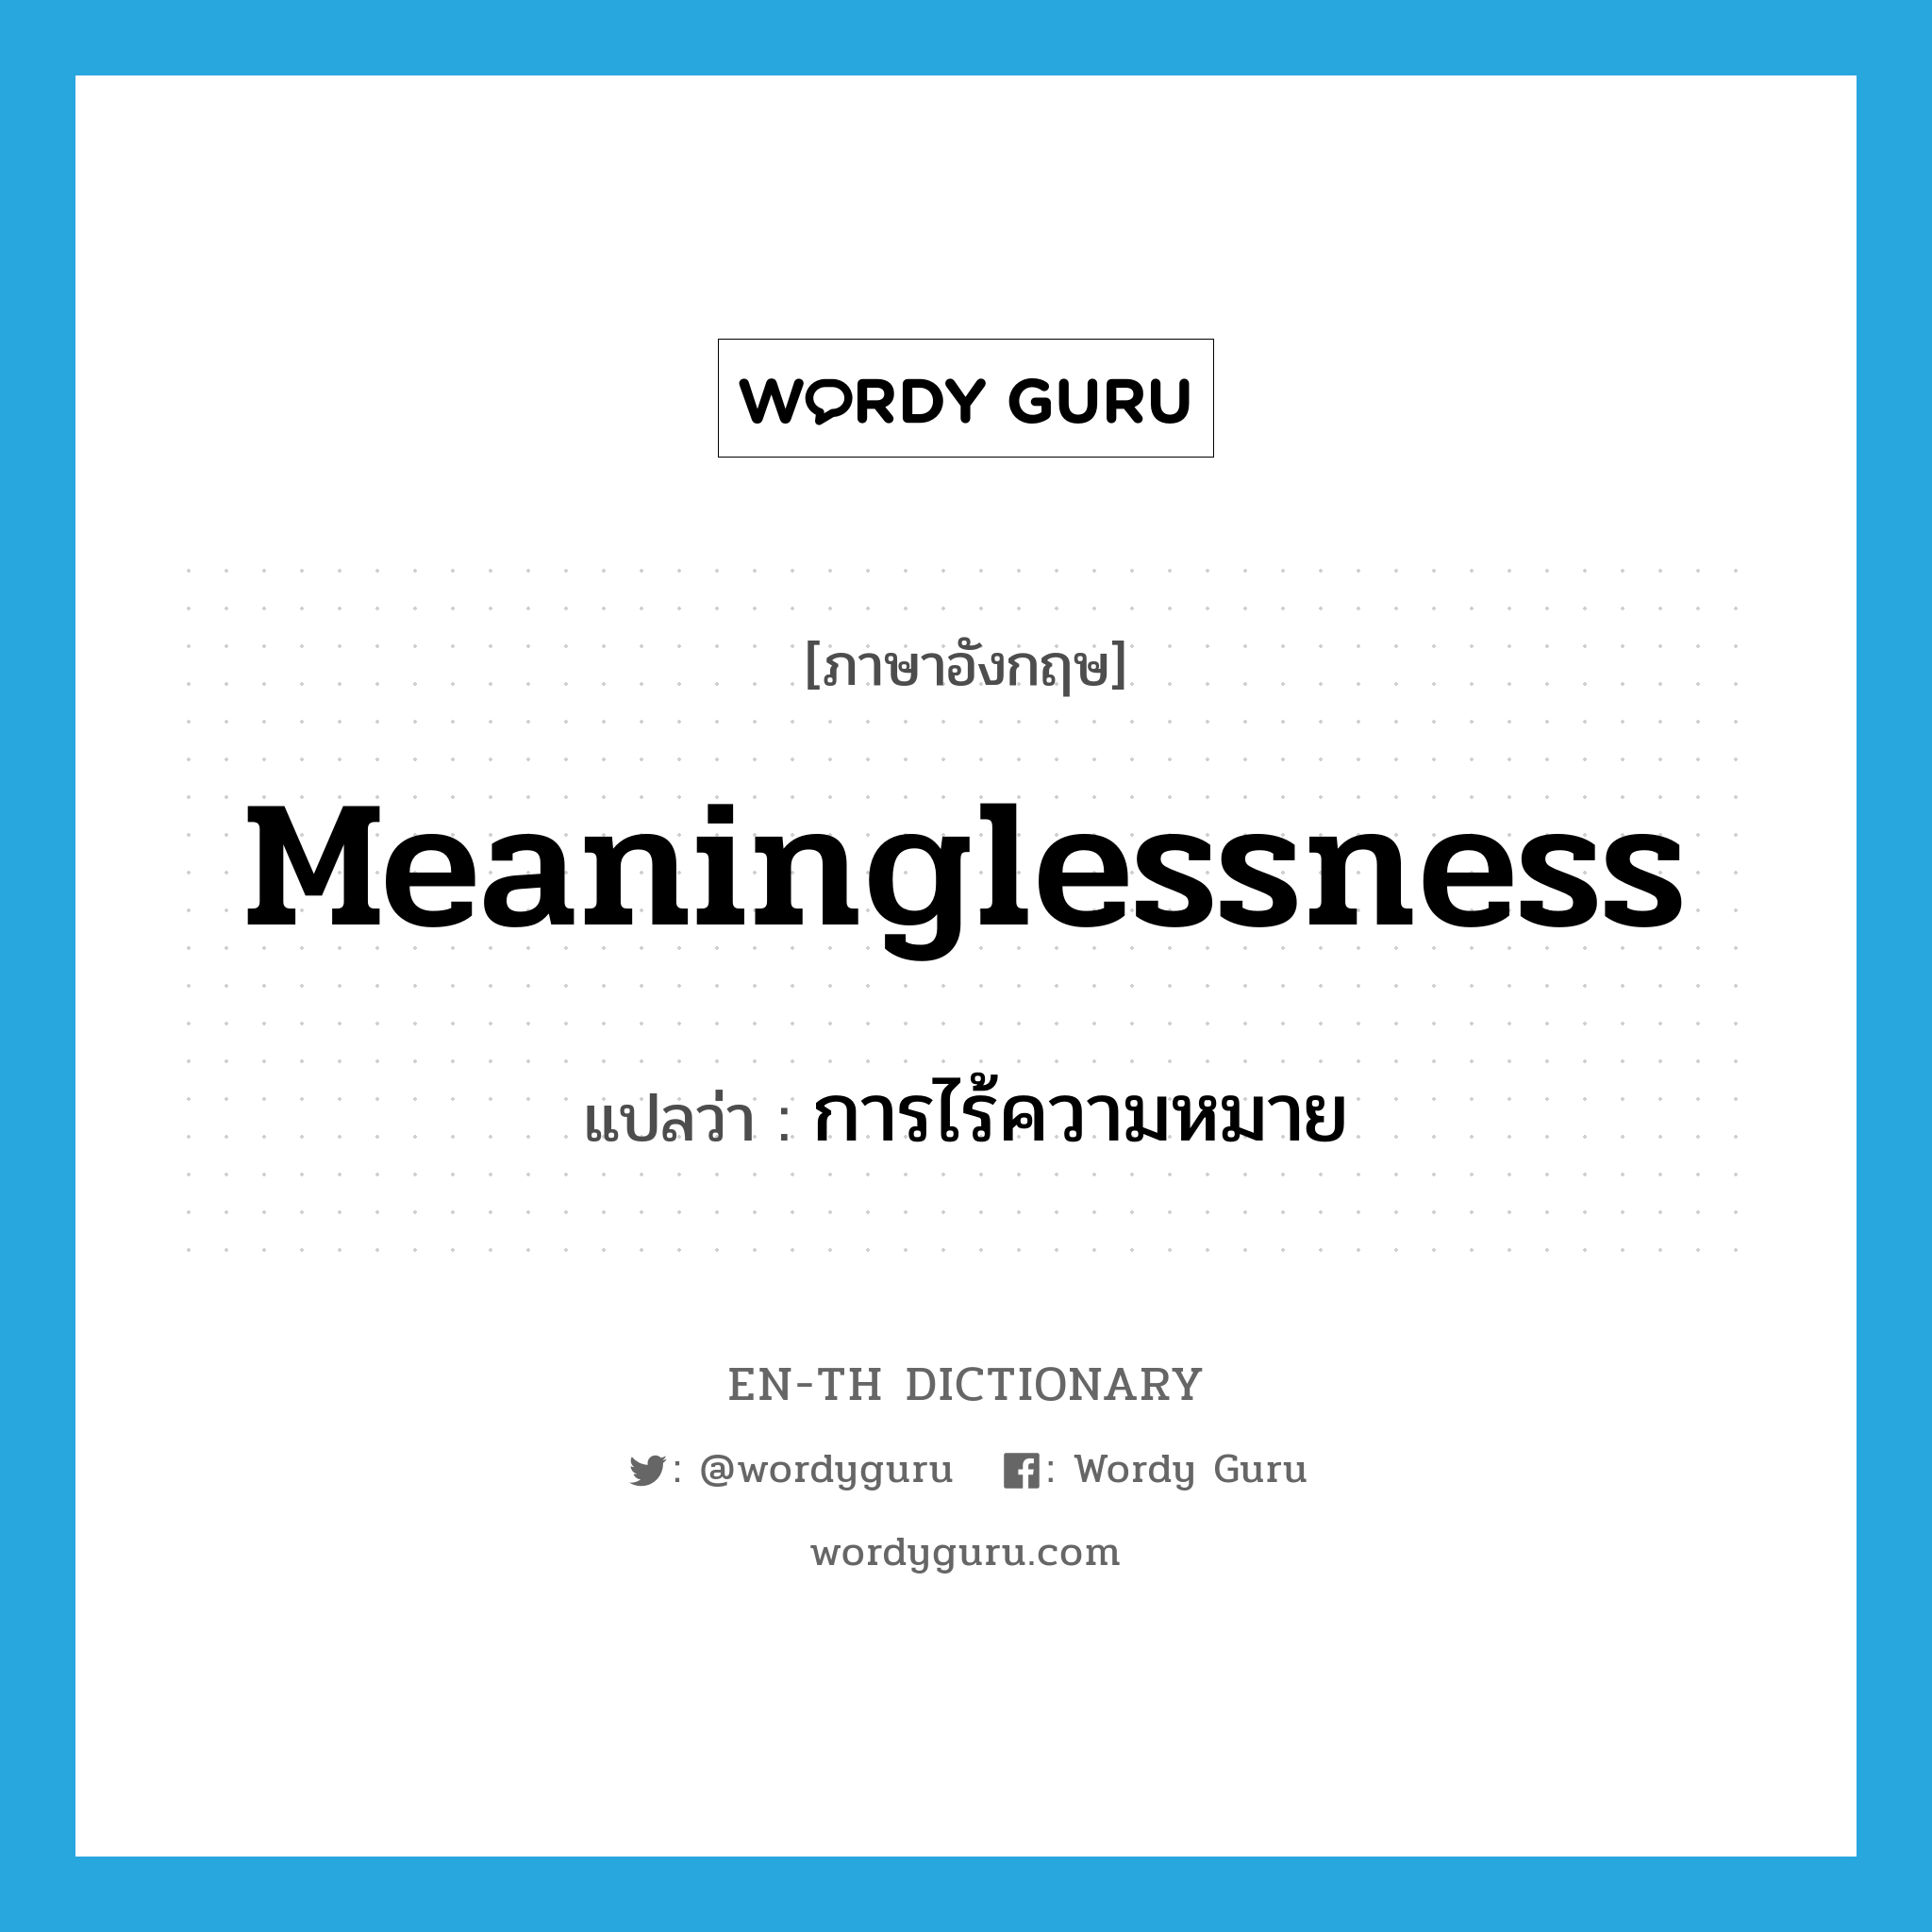 การไร้ความหมาย ภาษาอังกฤษ?, คำศัพท์ภาษาอังกฤษ การไร้ความหมาย แปลว่า meaninglessness ประเภท N หมวด N